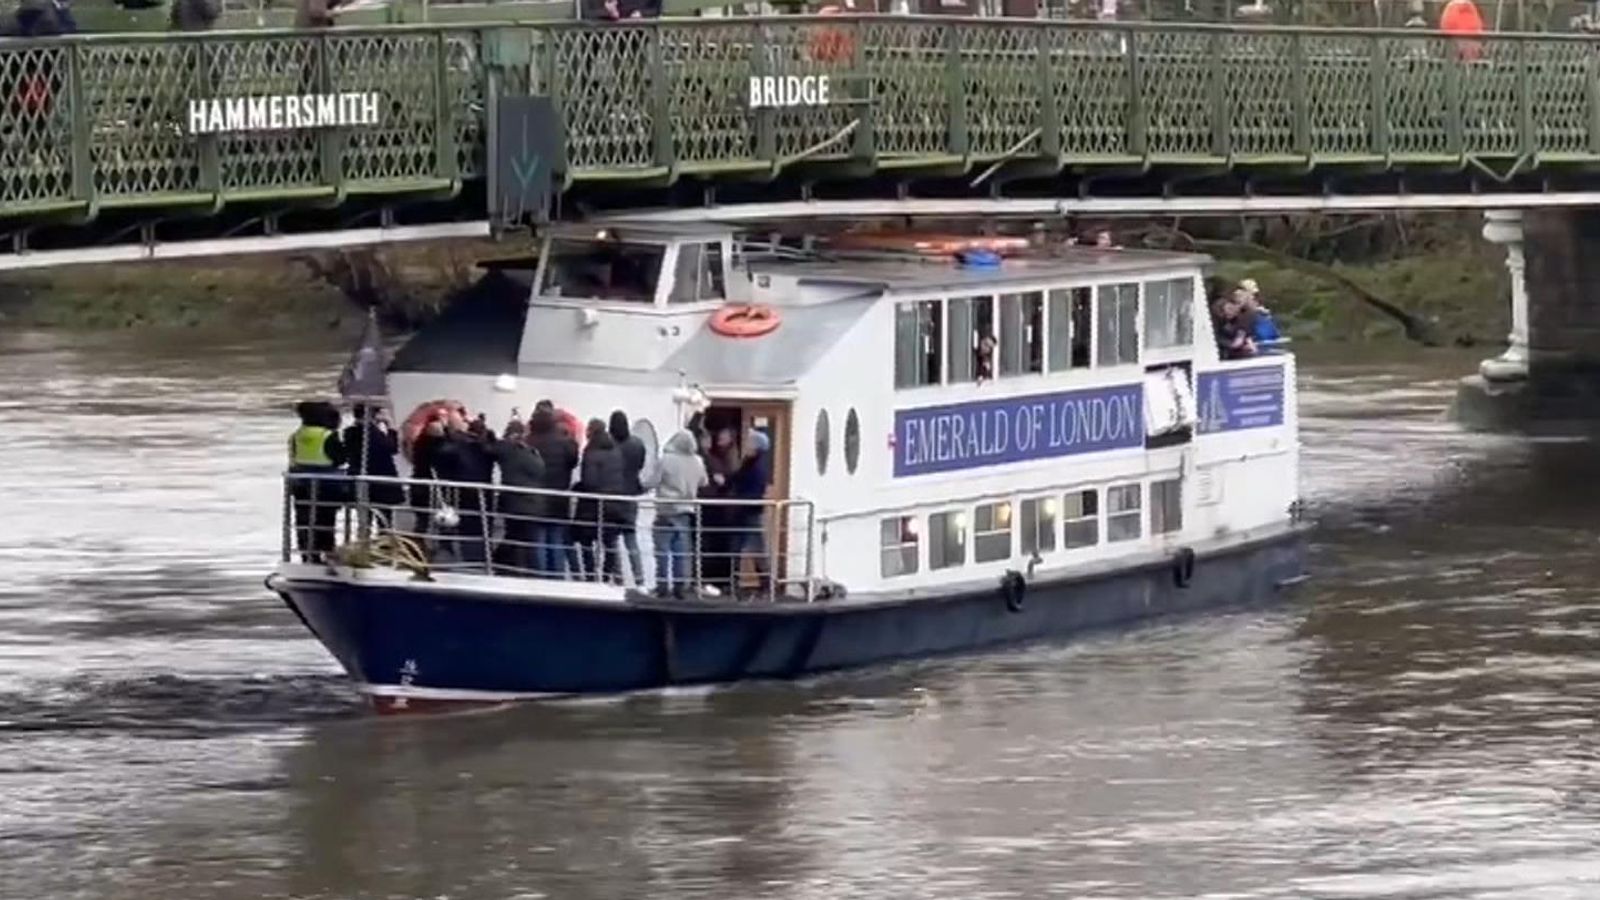 Във видеозапис от инцидента се вижда как натъпканата лодка се